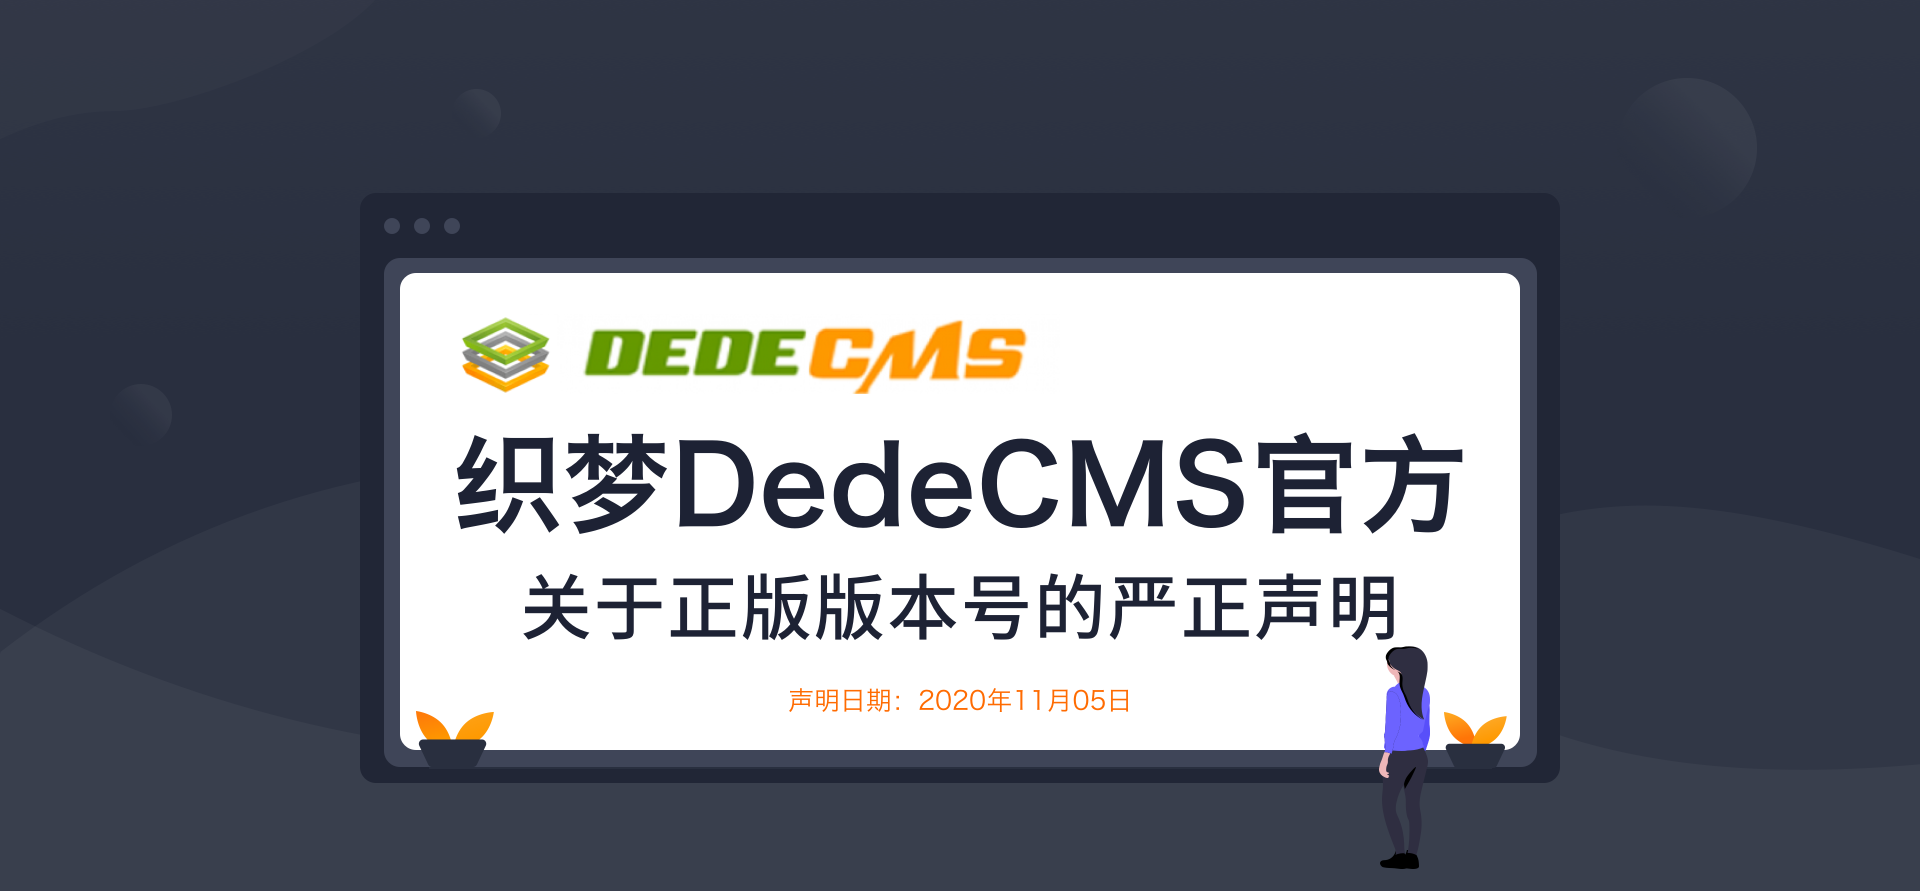 织梦DedeCMS官方更新通知 正版版号严正声明